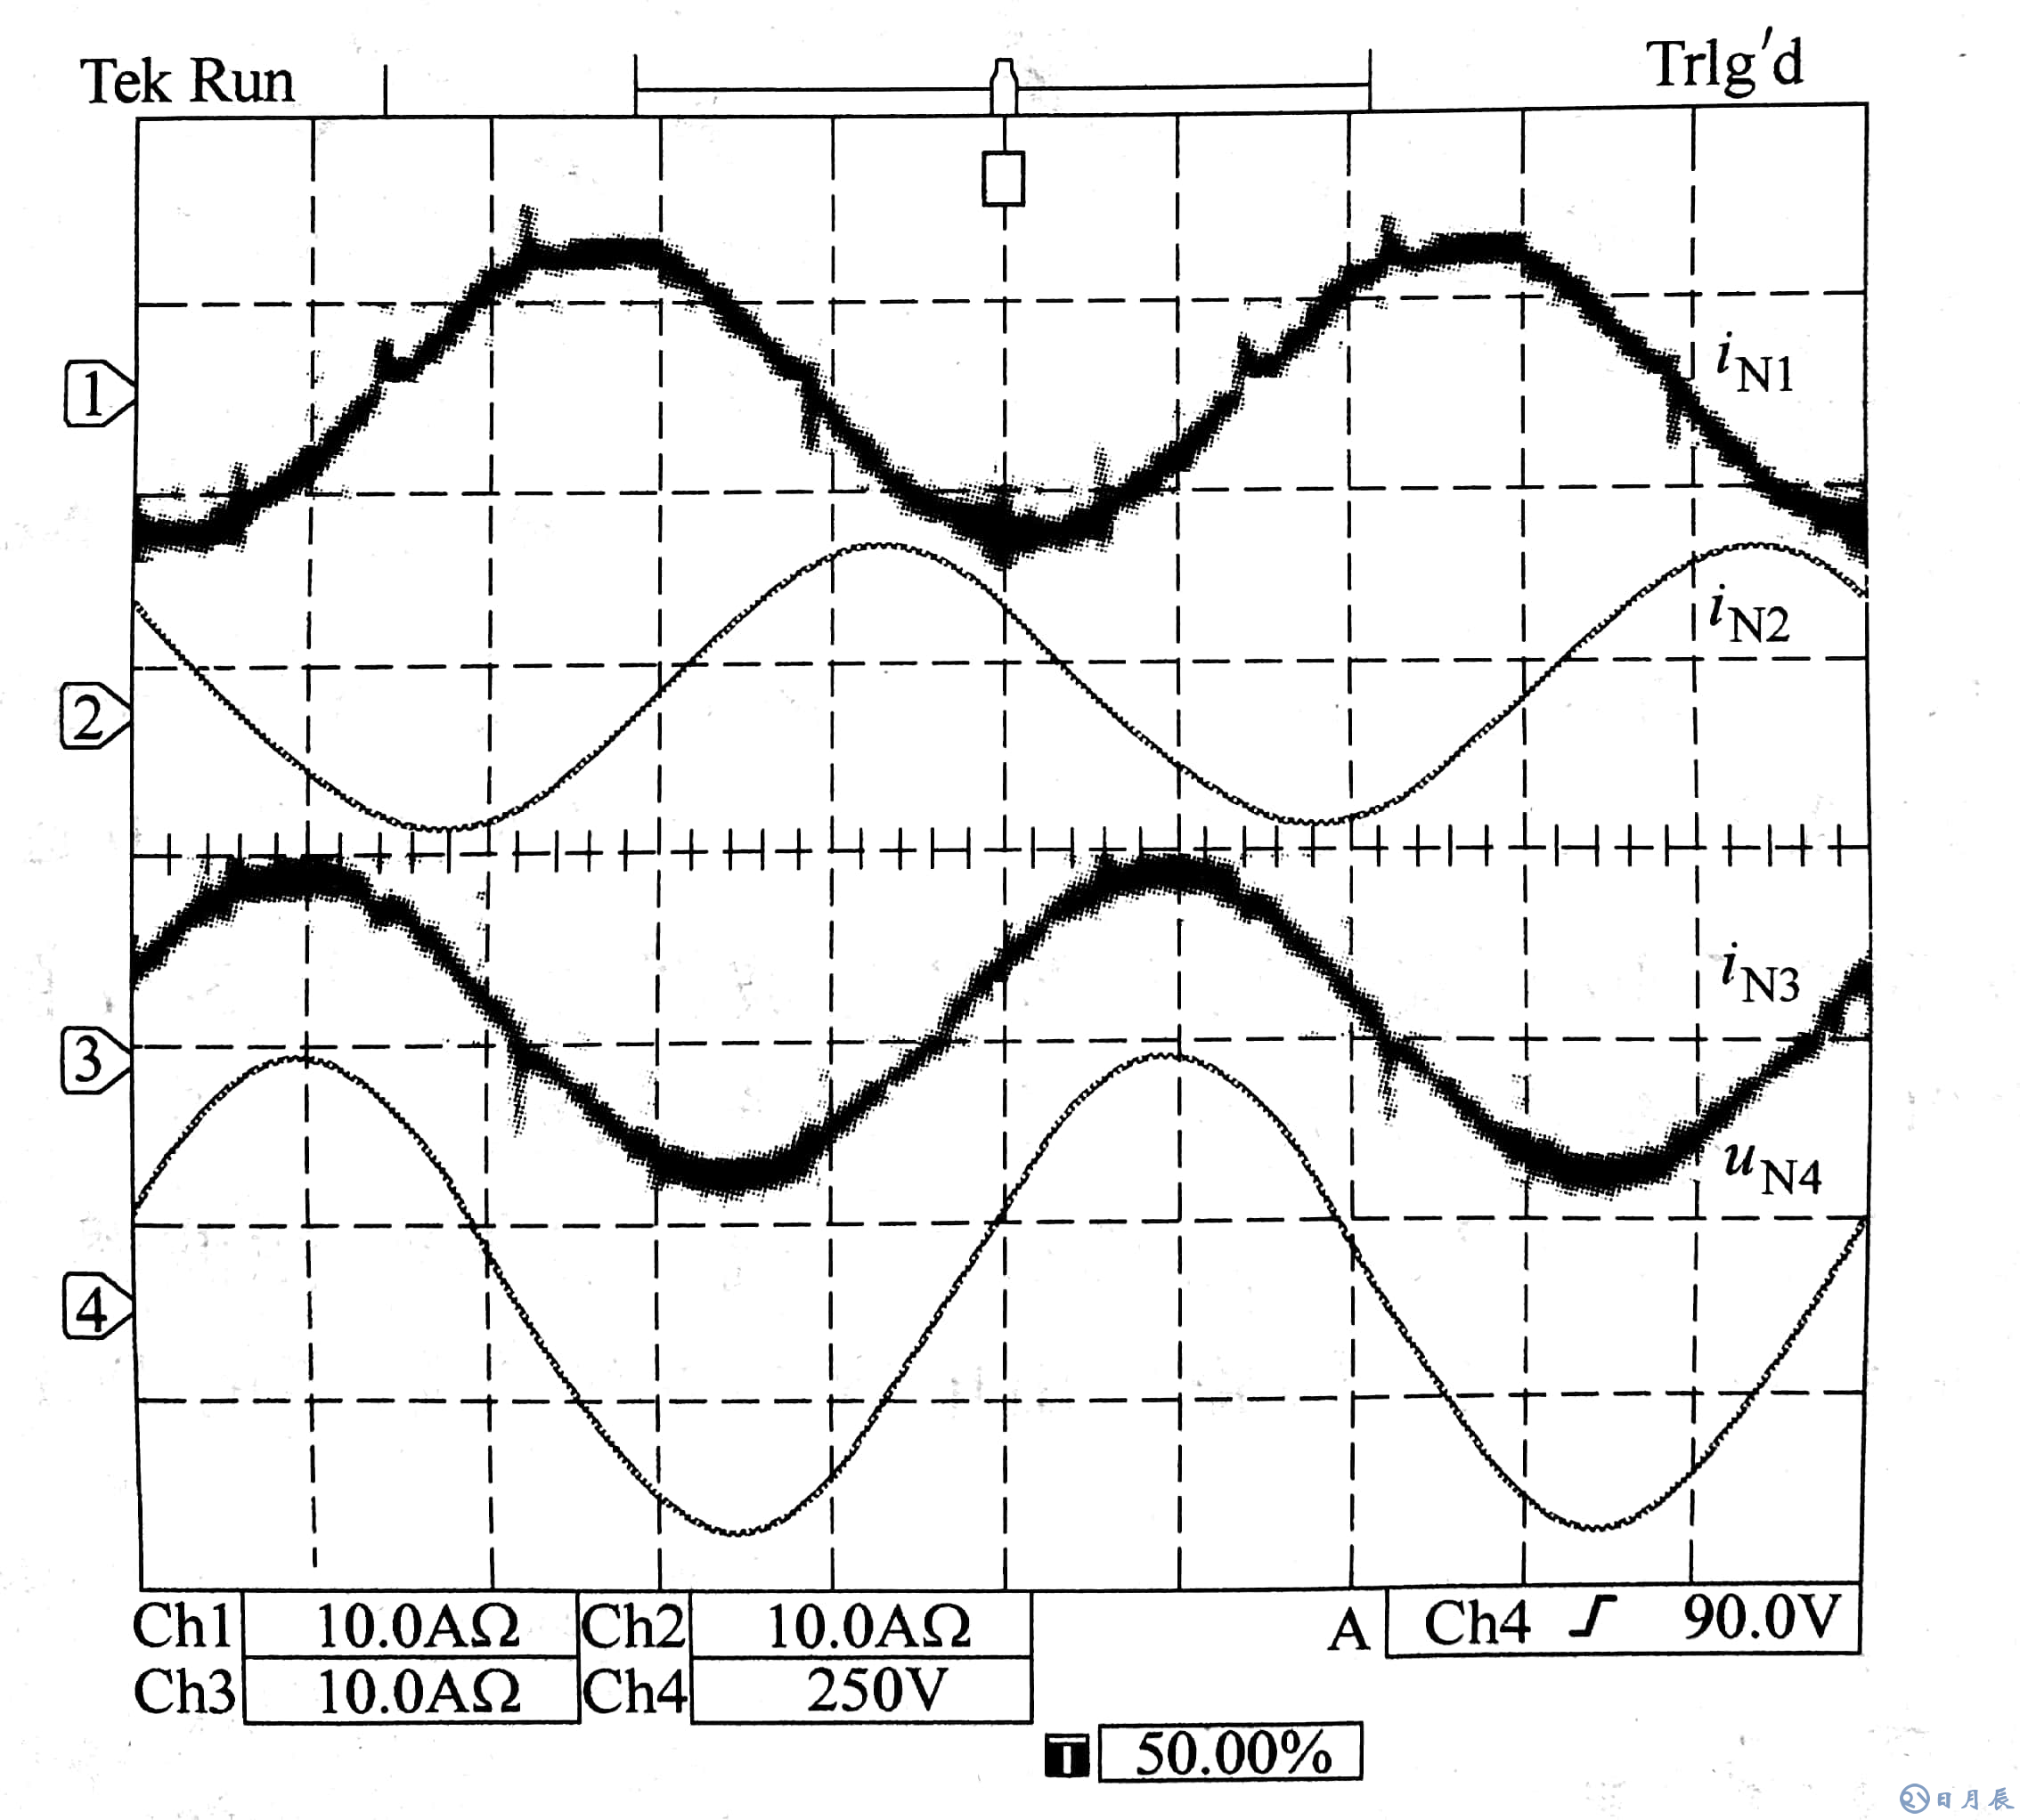 实验结果显示的4kW功率输出的三相电流CH1-CH3和输入电压CH14波形